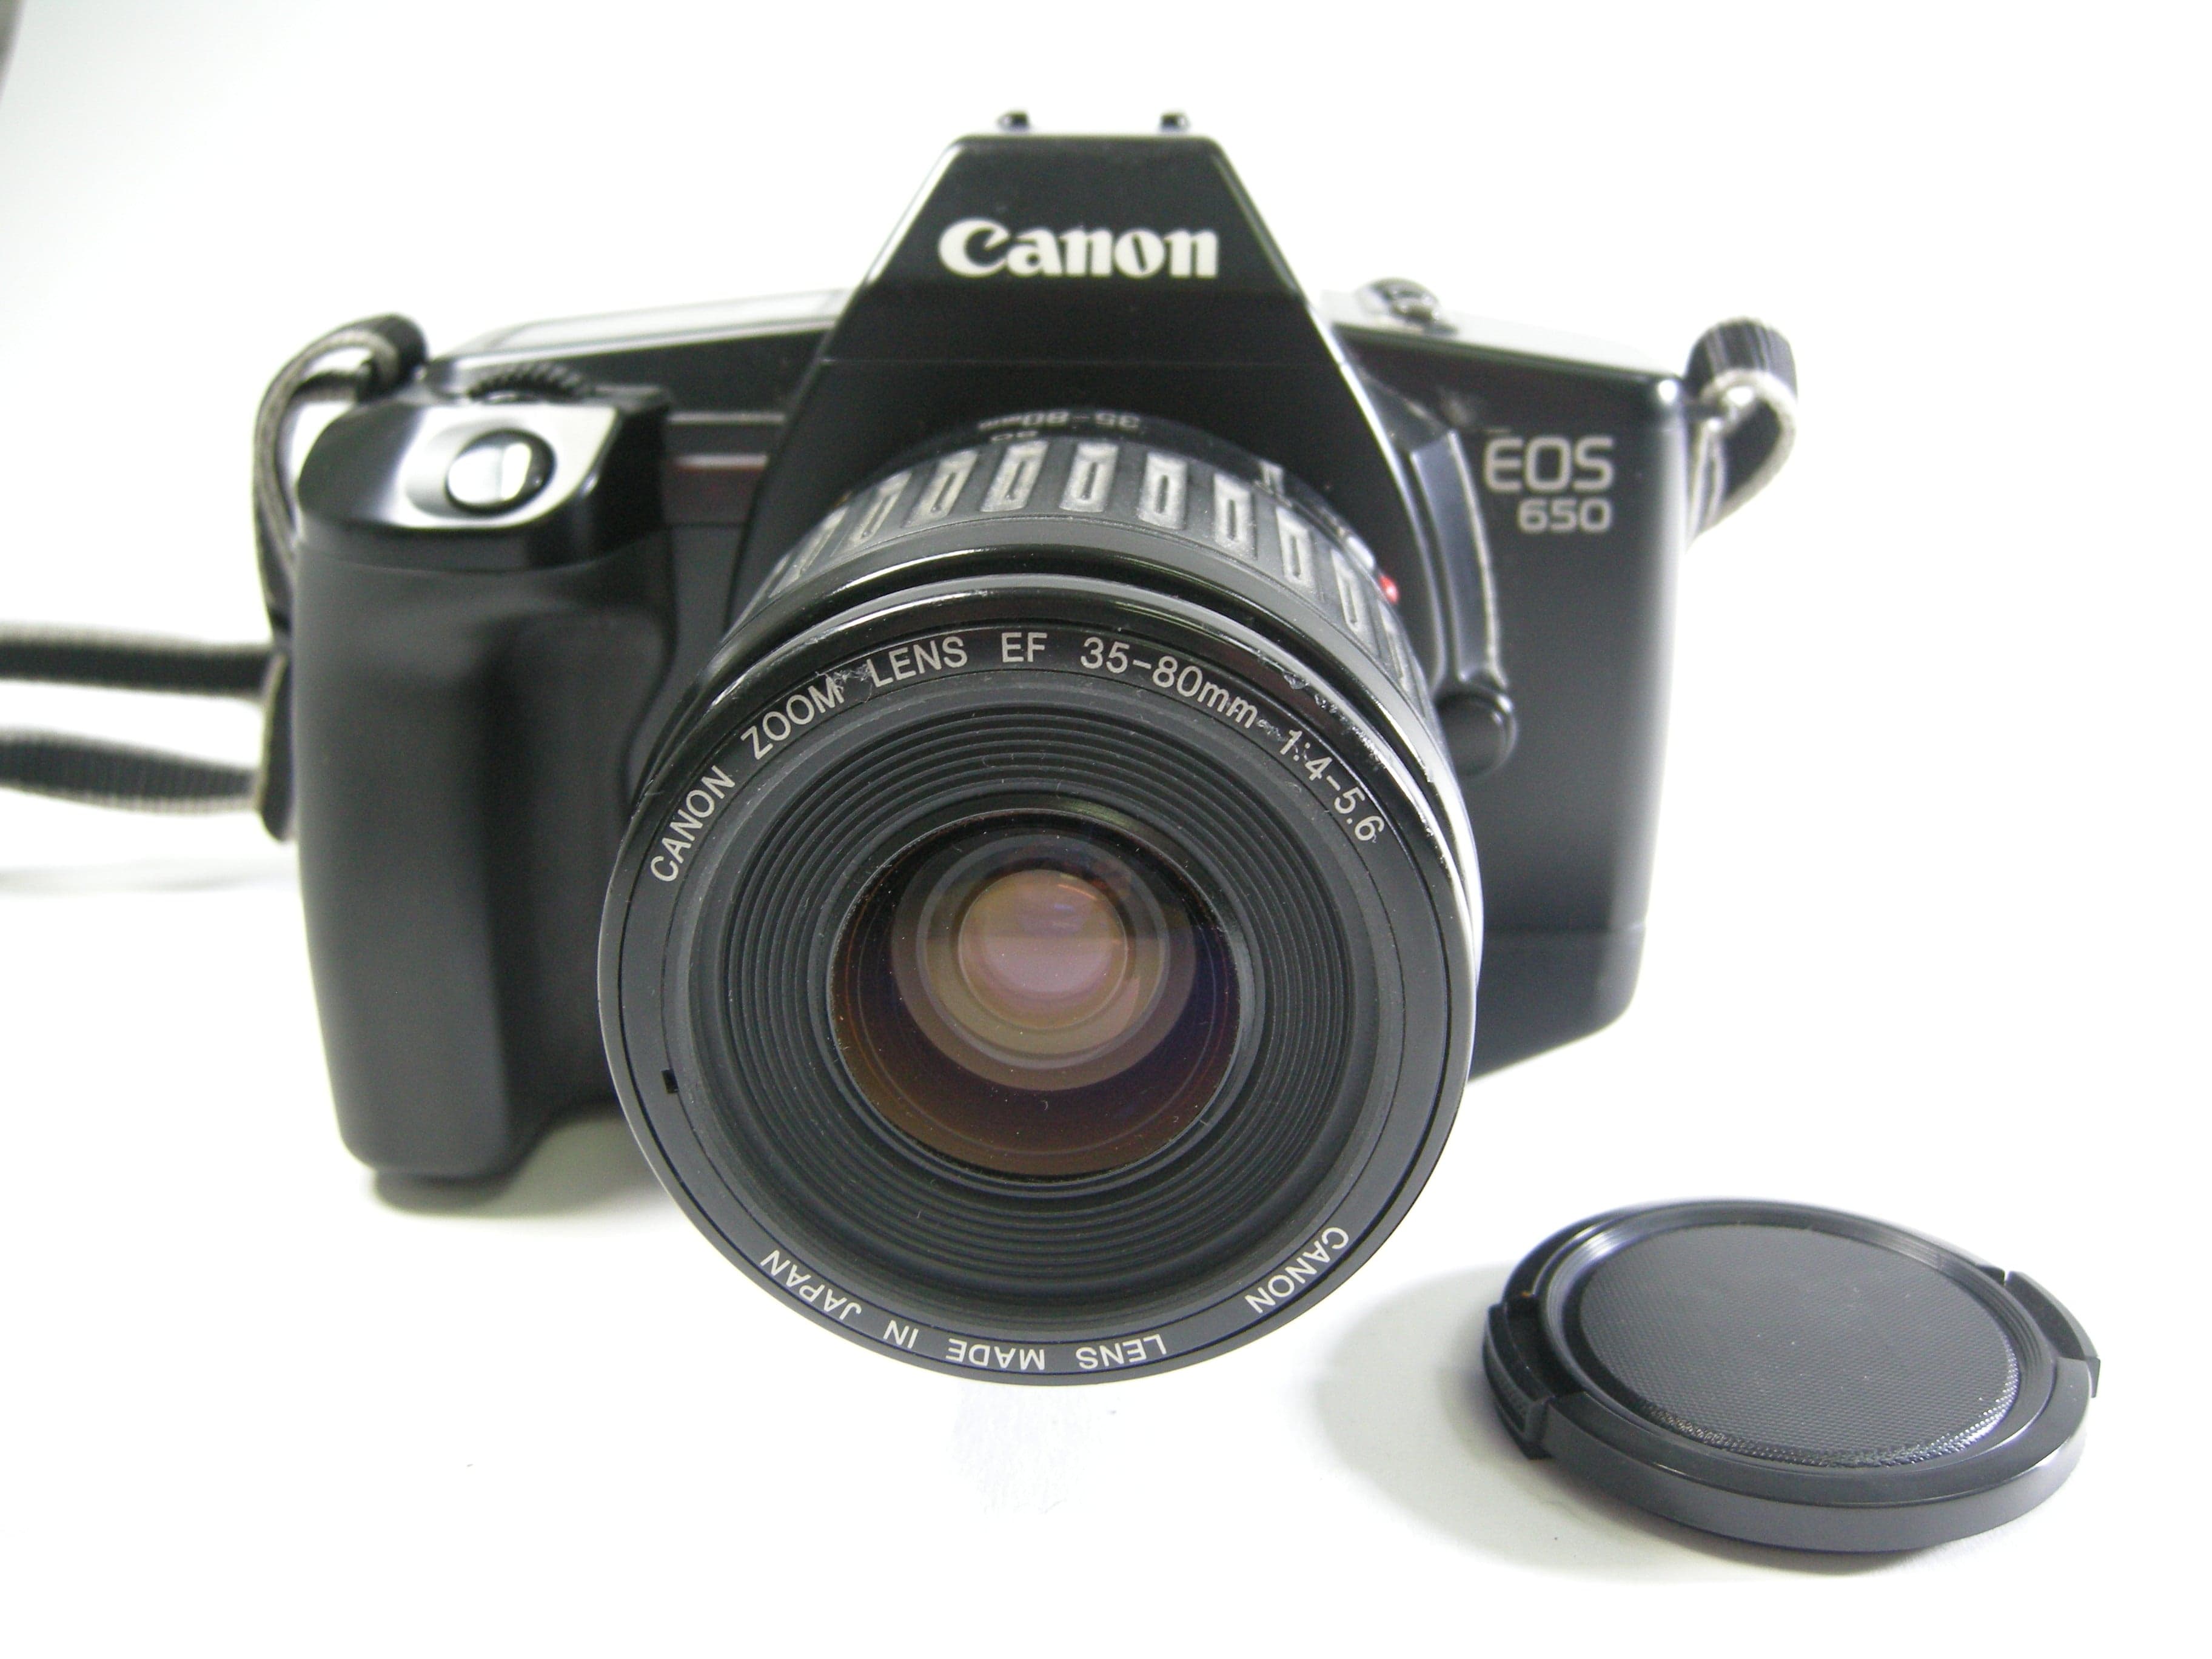 Canon EOS 650 35mm SLR w/EF 35-80mm f4-5.6